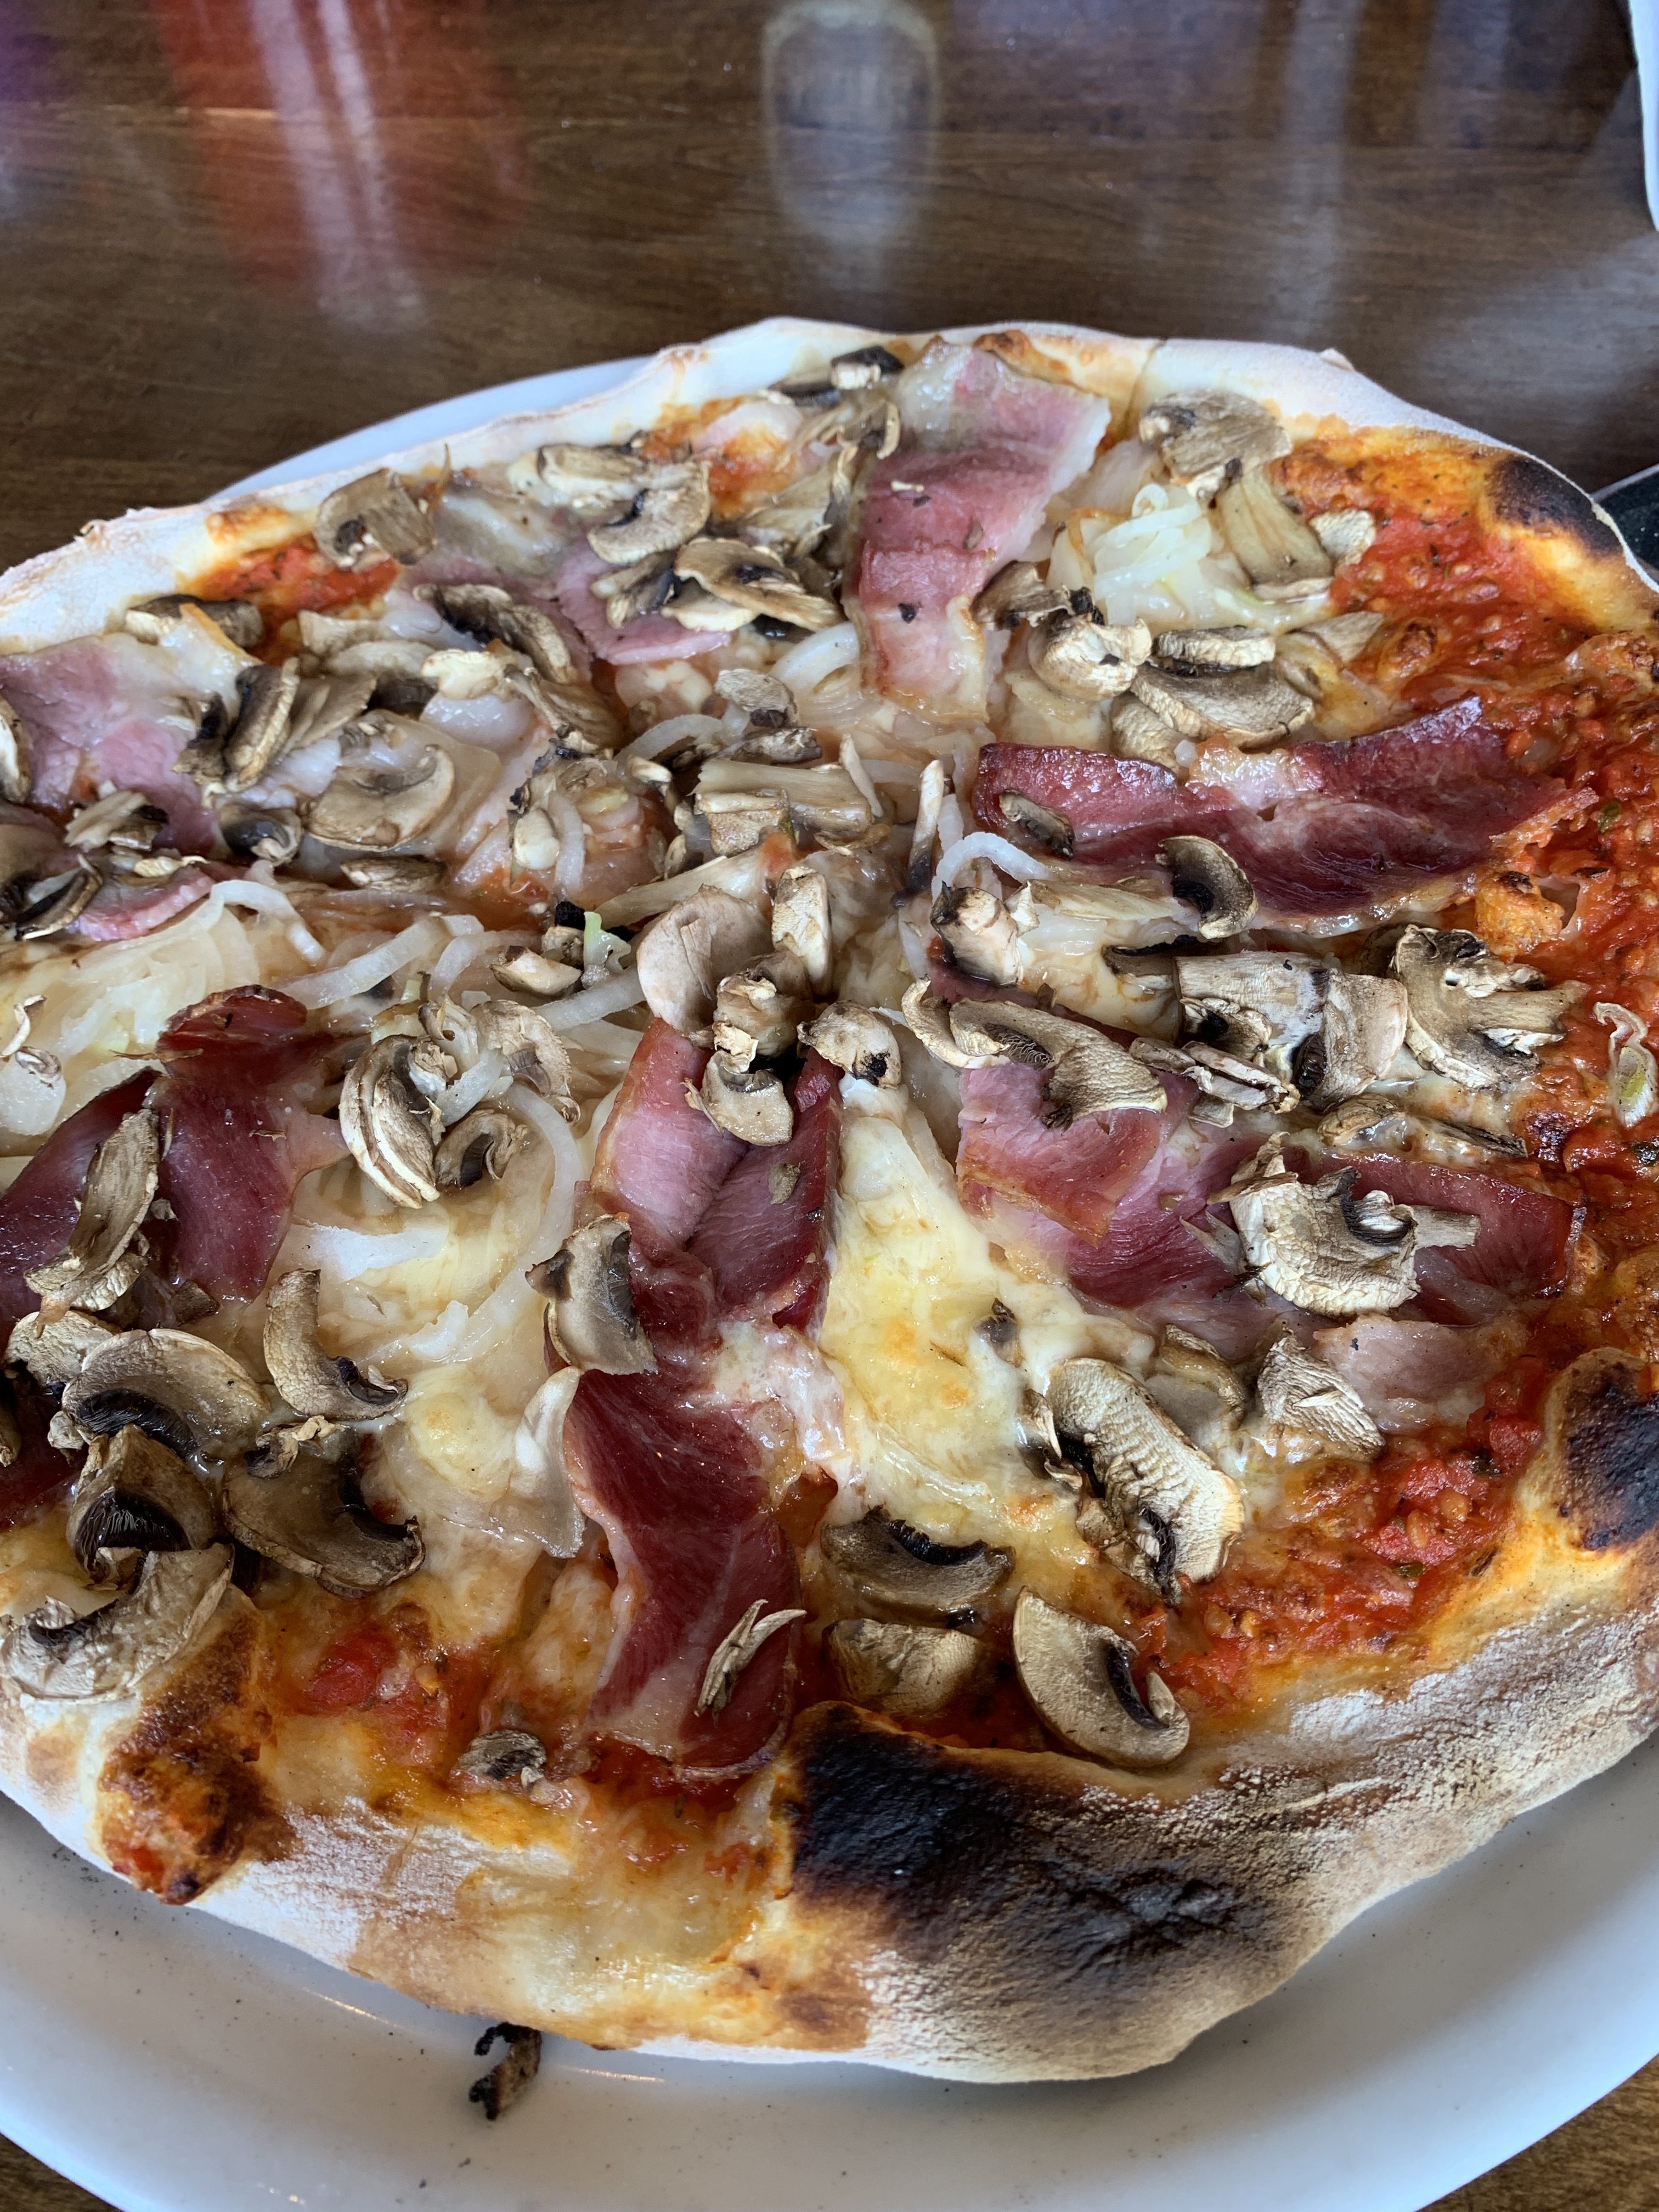 italian pizza restaurant mesita grande punta arenas chile antarctica